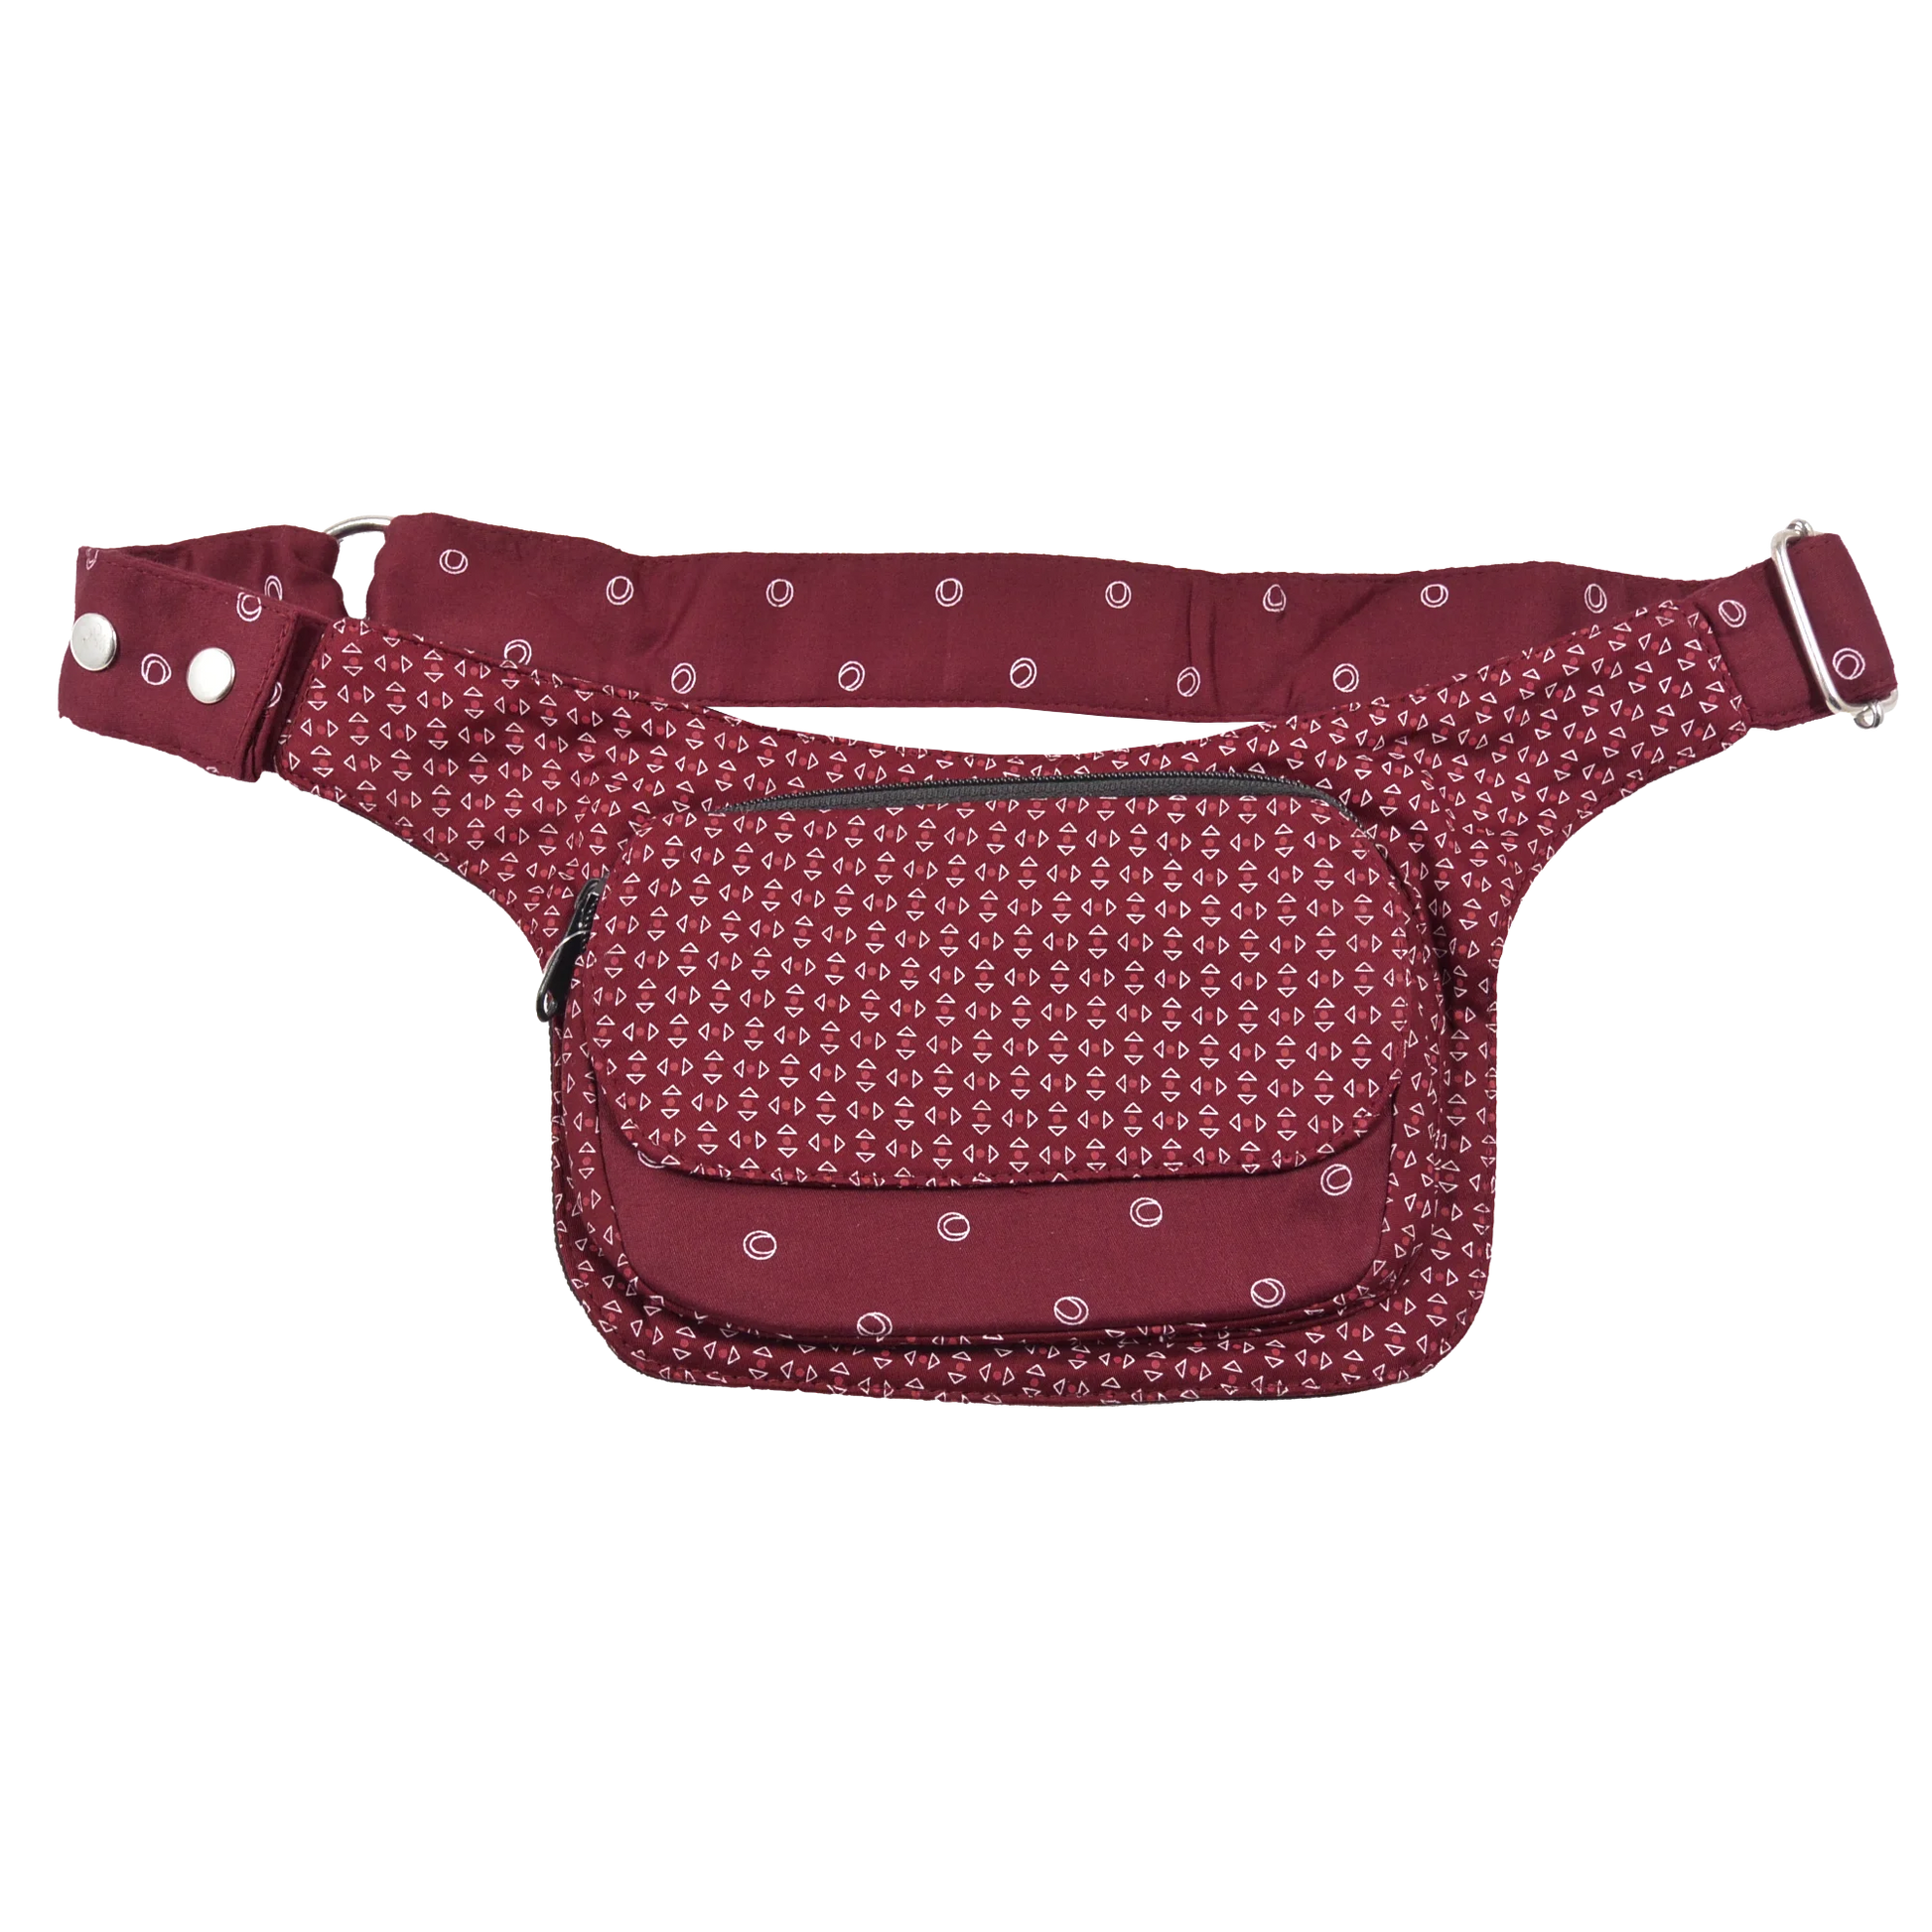 Gassi-Tasche, Bauchtasche aus Baumwolle Bordeaux Rot mit Mustermix und wasserabweisendem Innenraum. Sie besitzt ein Reißverschlussfach auf der Rückseite sowie eine Reißverschluss und Einsteckfach vorne.